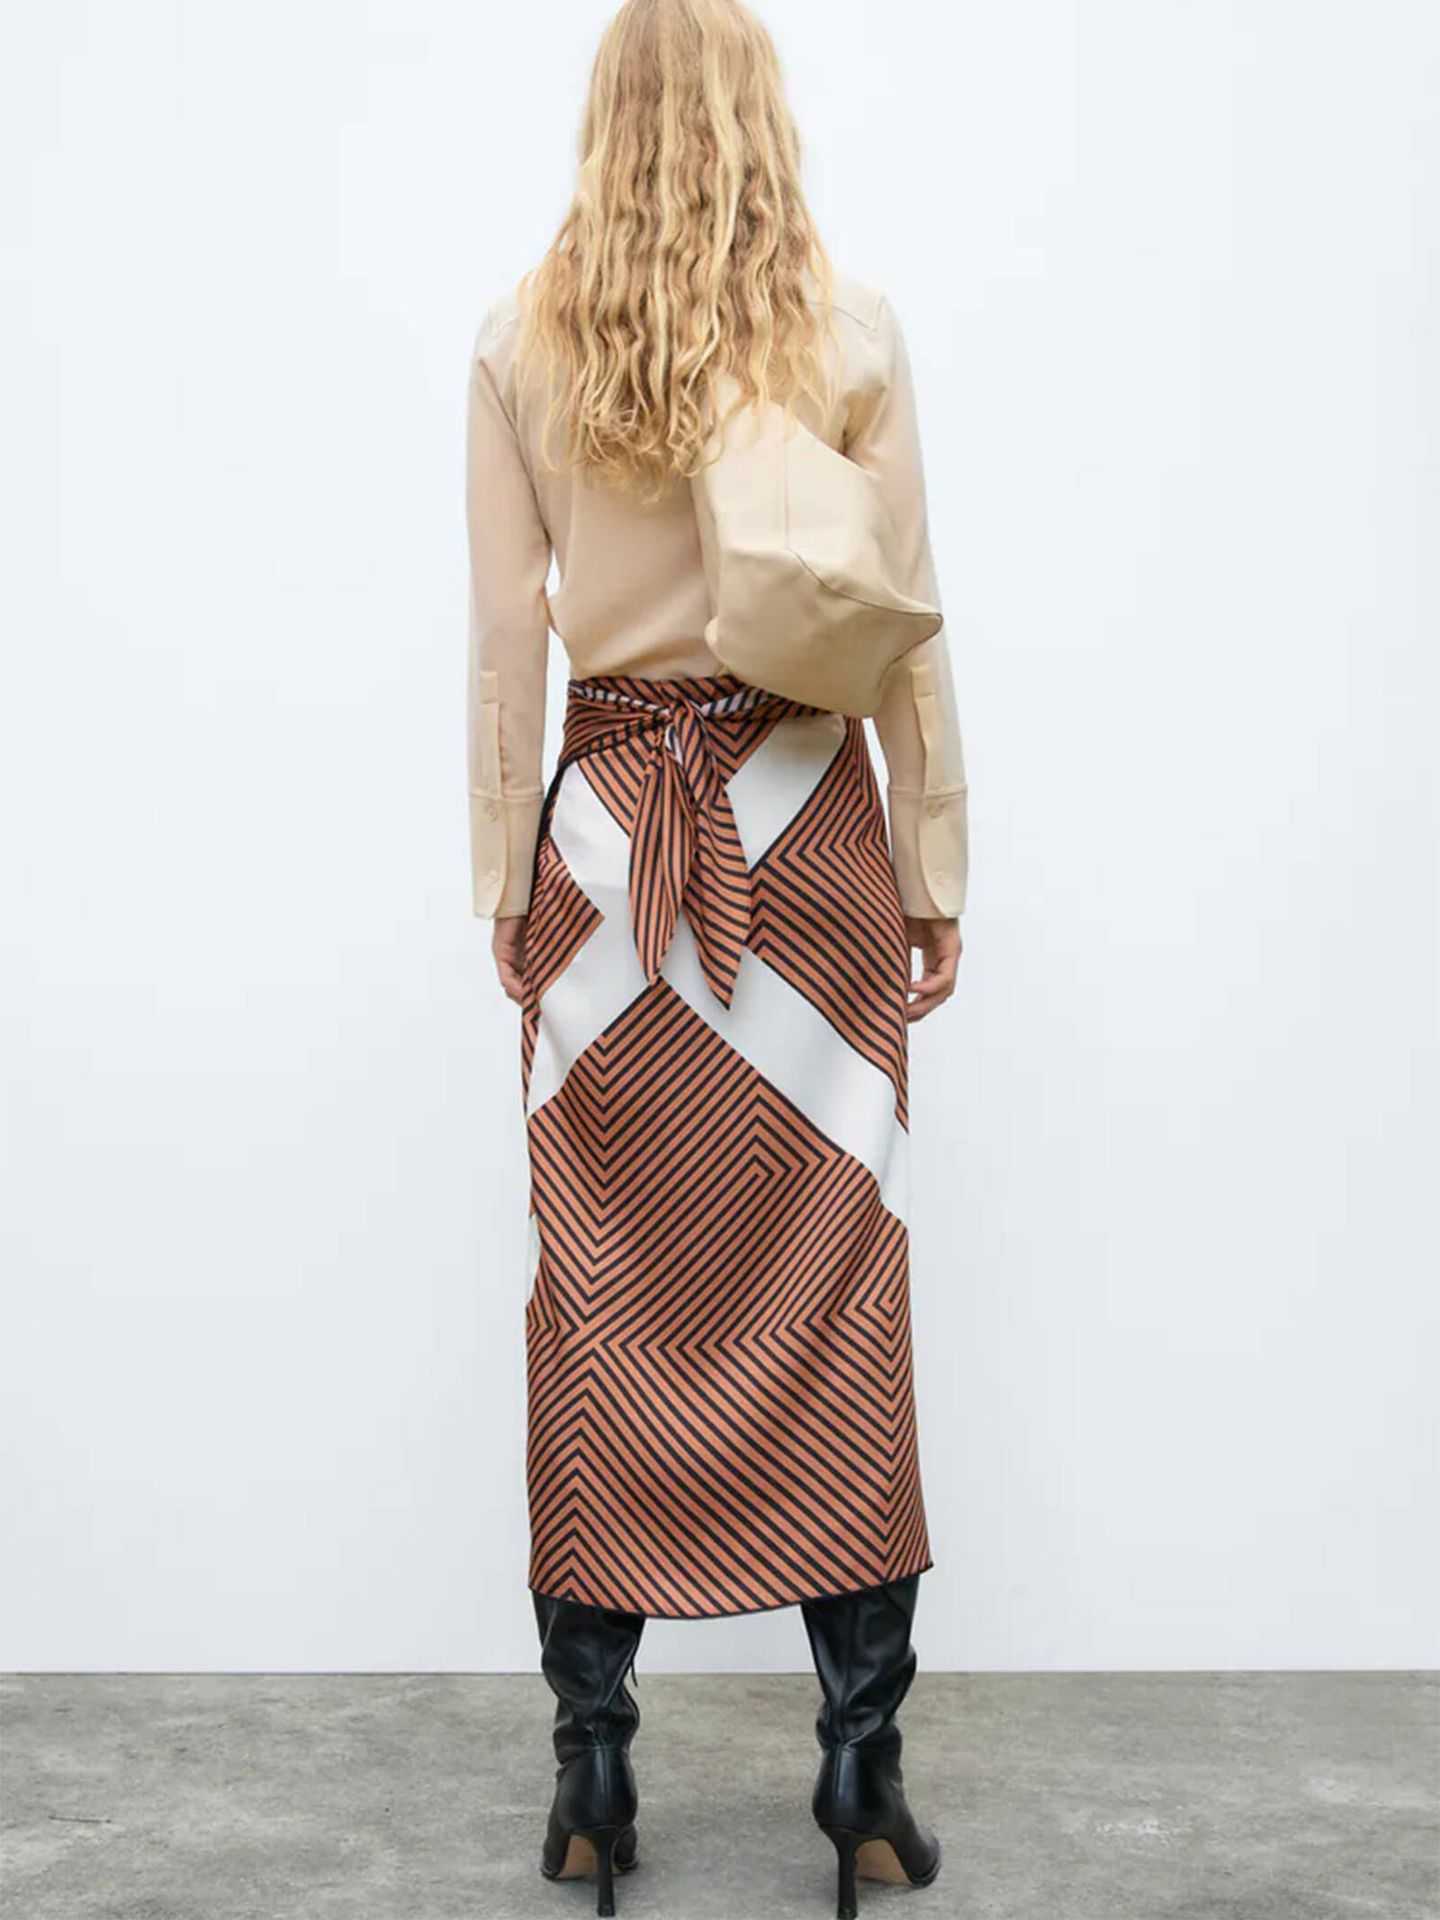 La falda pareo de Zara que puedes llevar en otoño. (Cortesía)